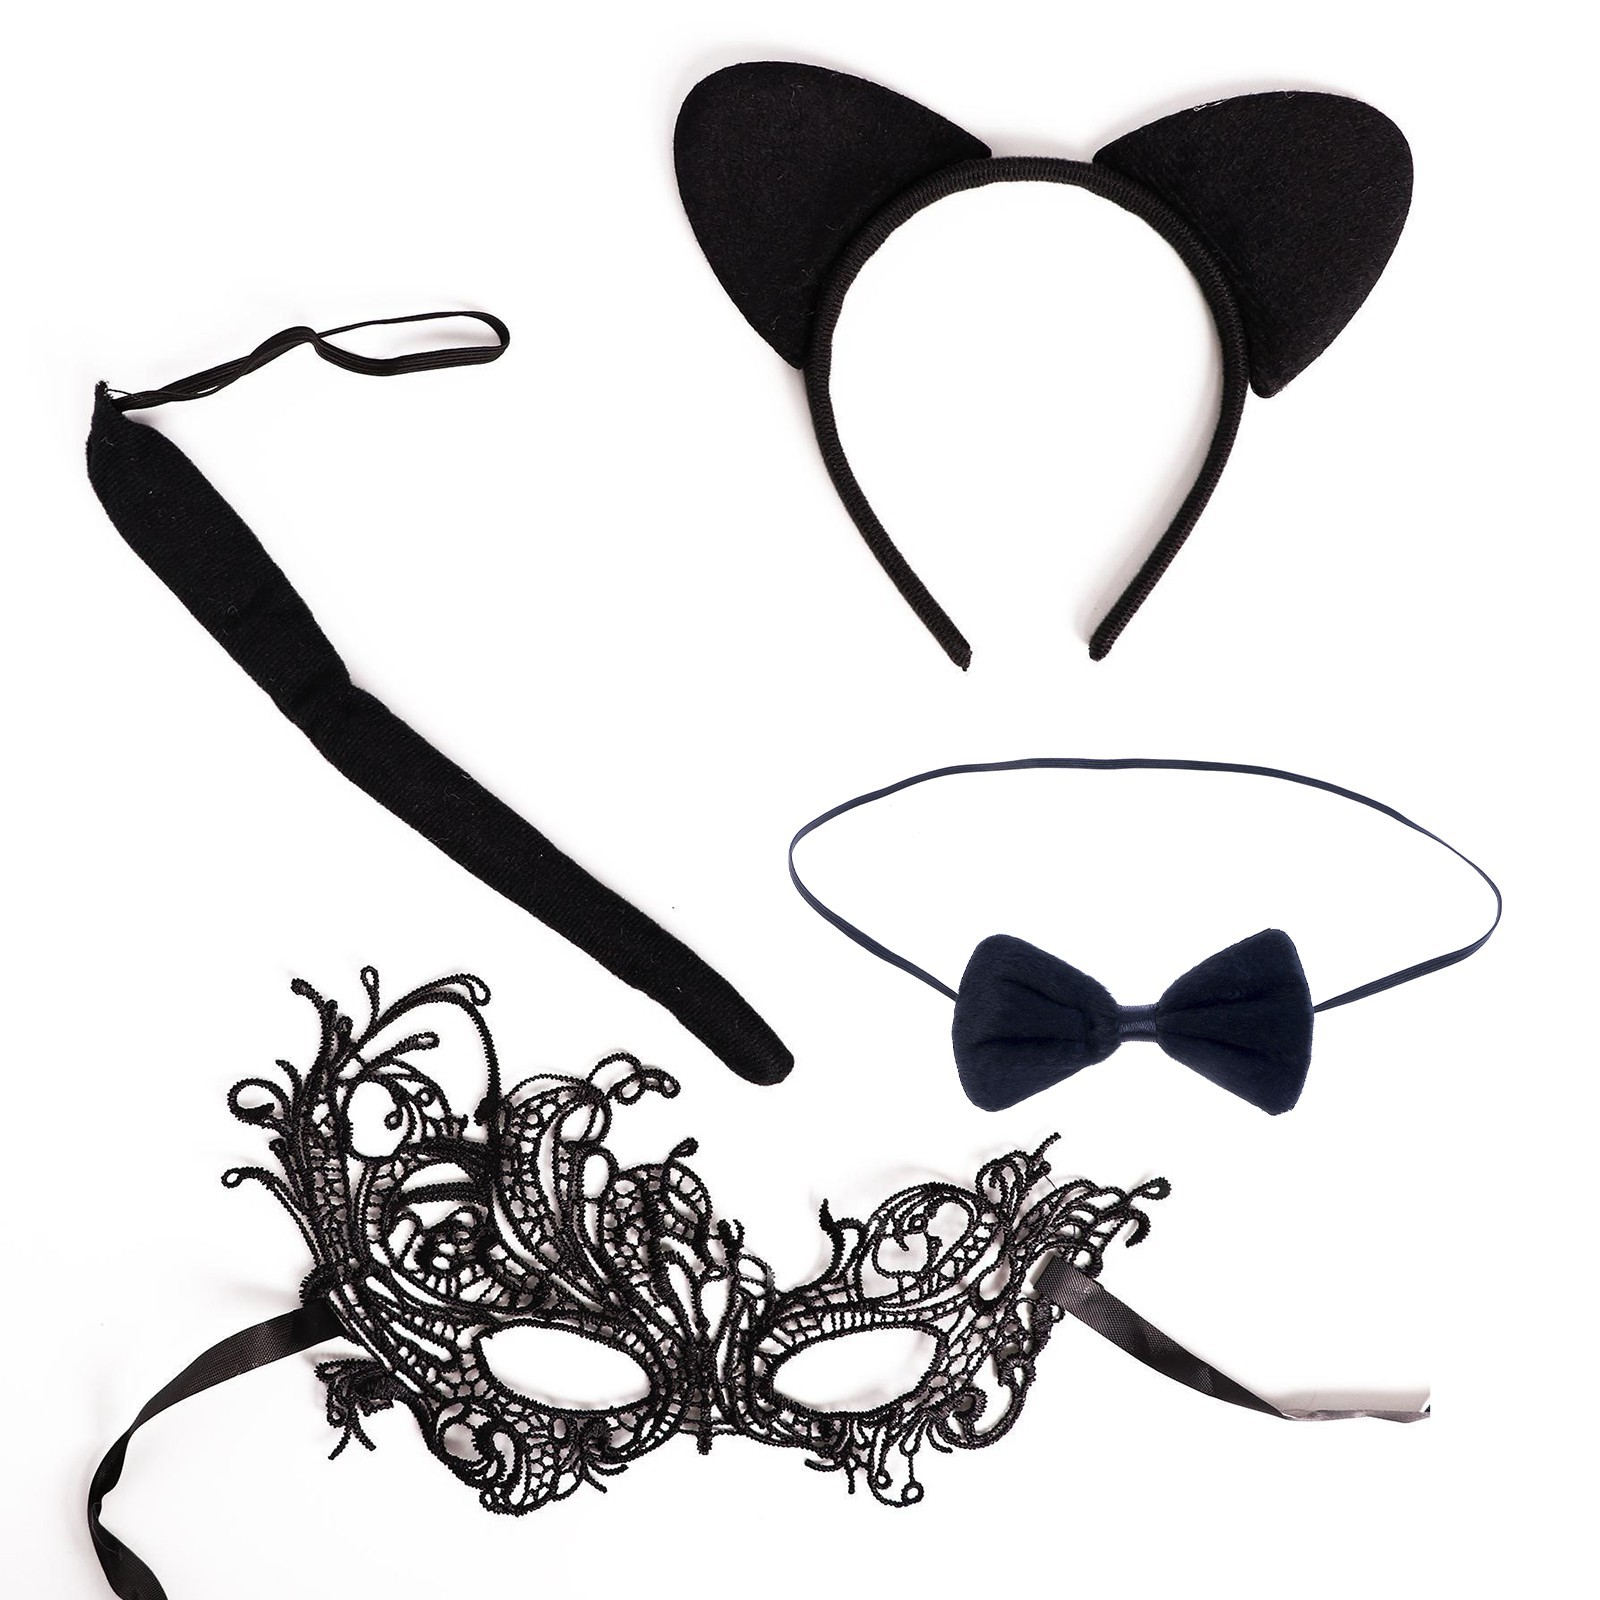 Карнавальный костюм взрослый «Женщина - кошка», ободок, хвостик, маска (2528164) - Купить по цене от 269.00 руб.